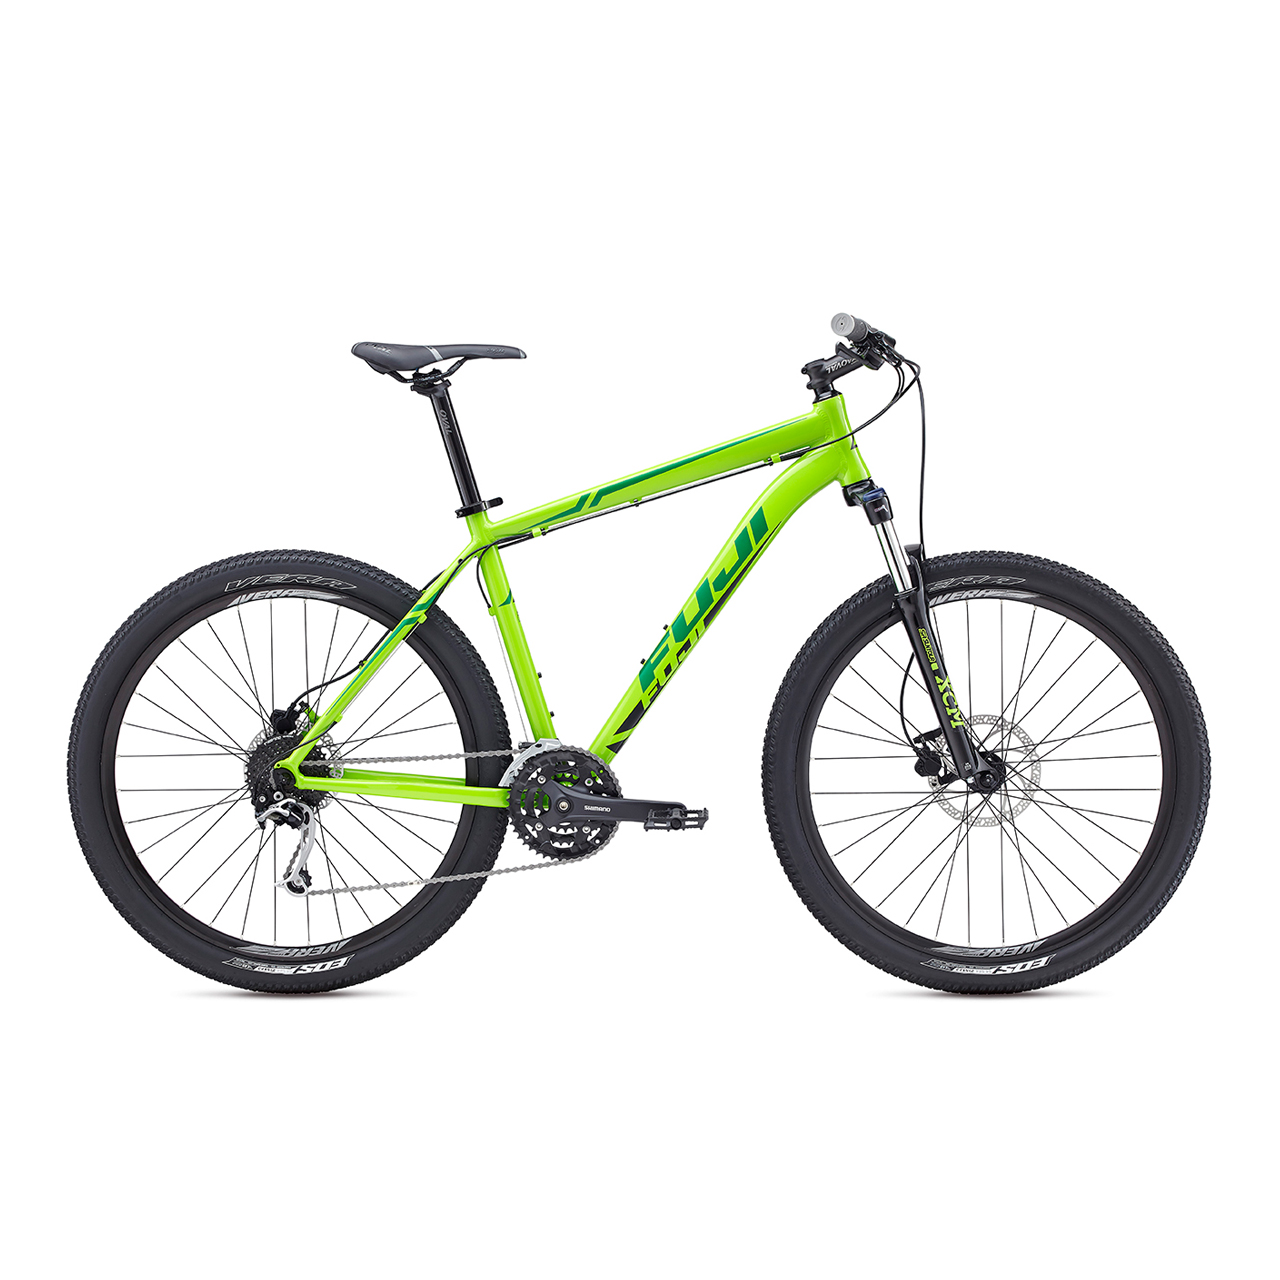 دوچرخه کوهستان فوجی نوادا 1.4 سایز 27.5 رنگ سبز 2017